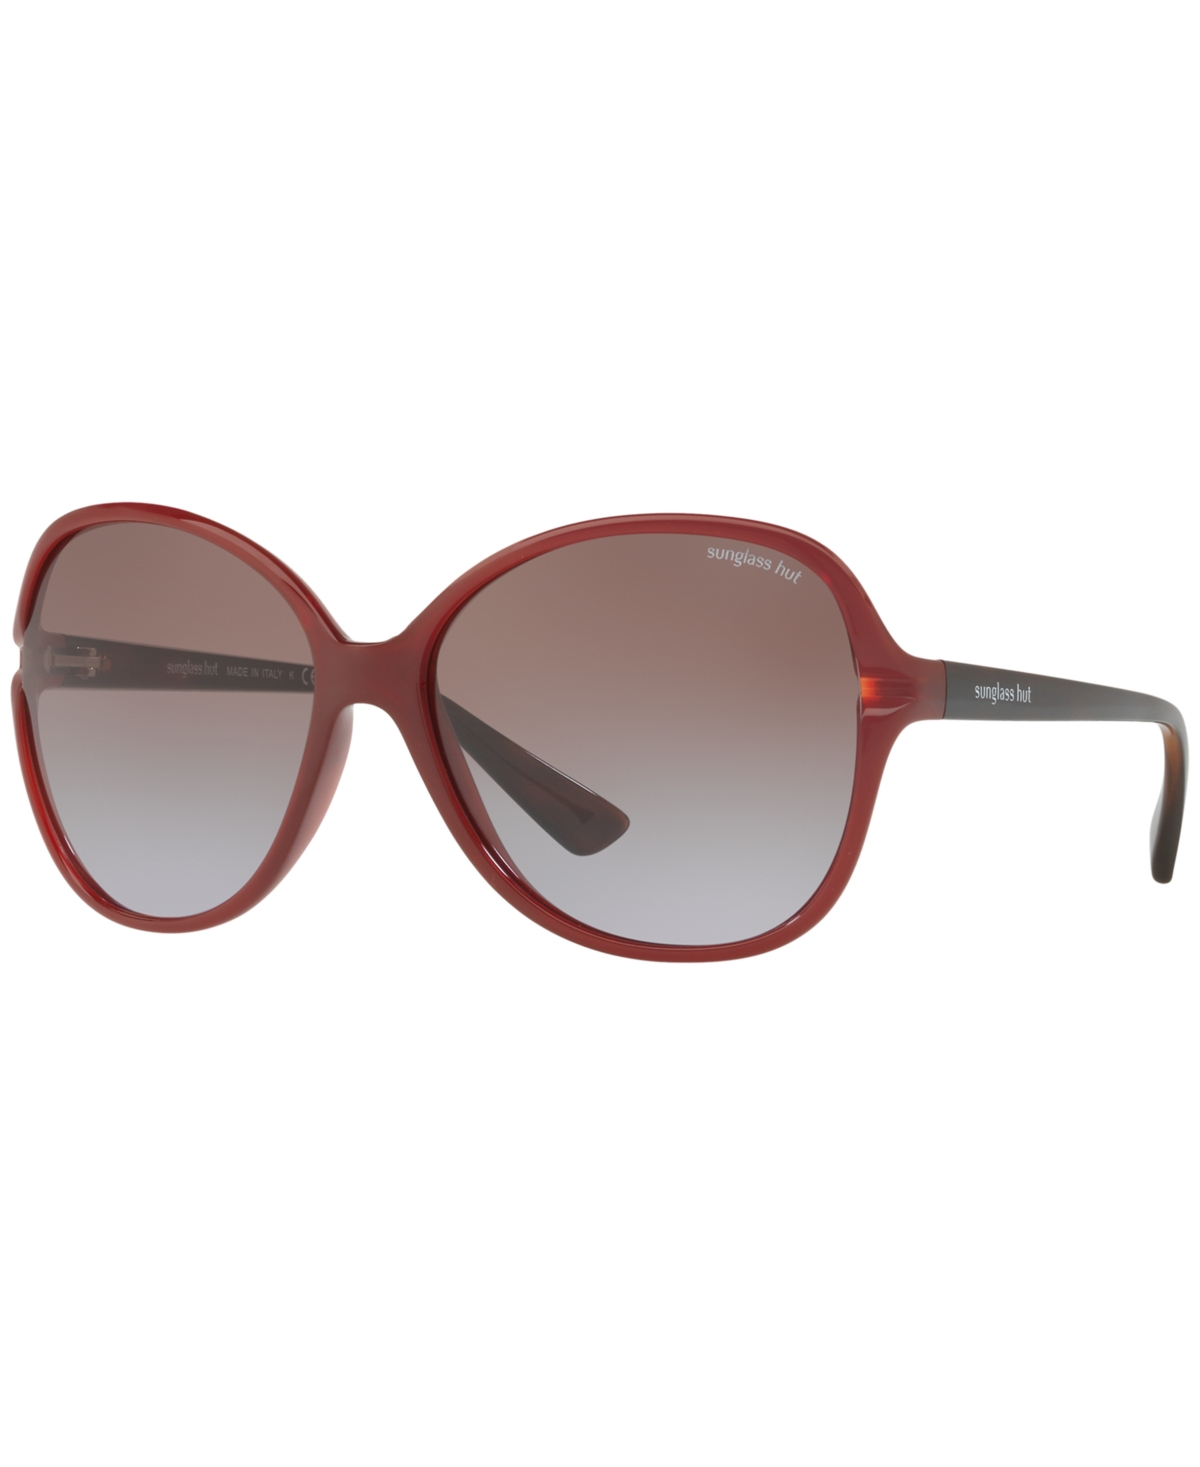 Sunglasses, HU2001 60 - RED/BROWN GRADIENT